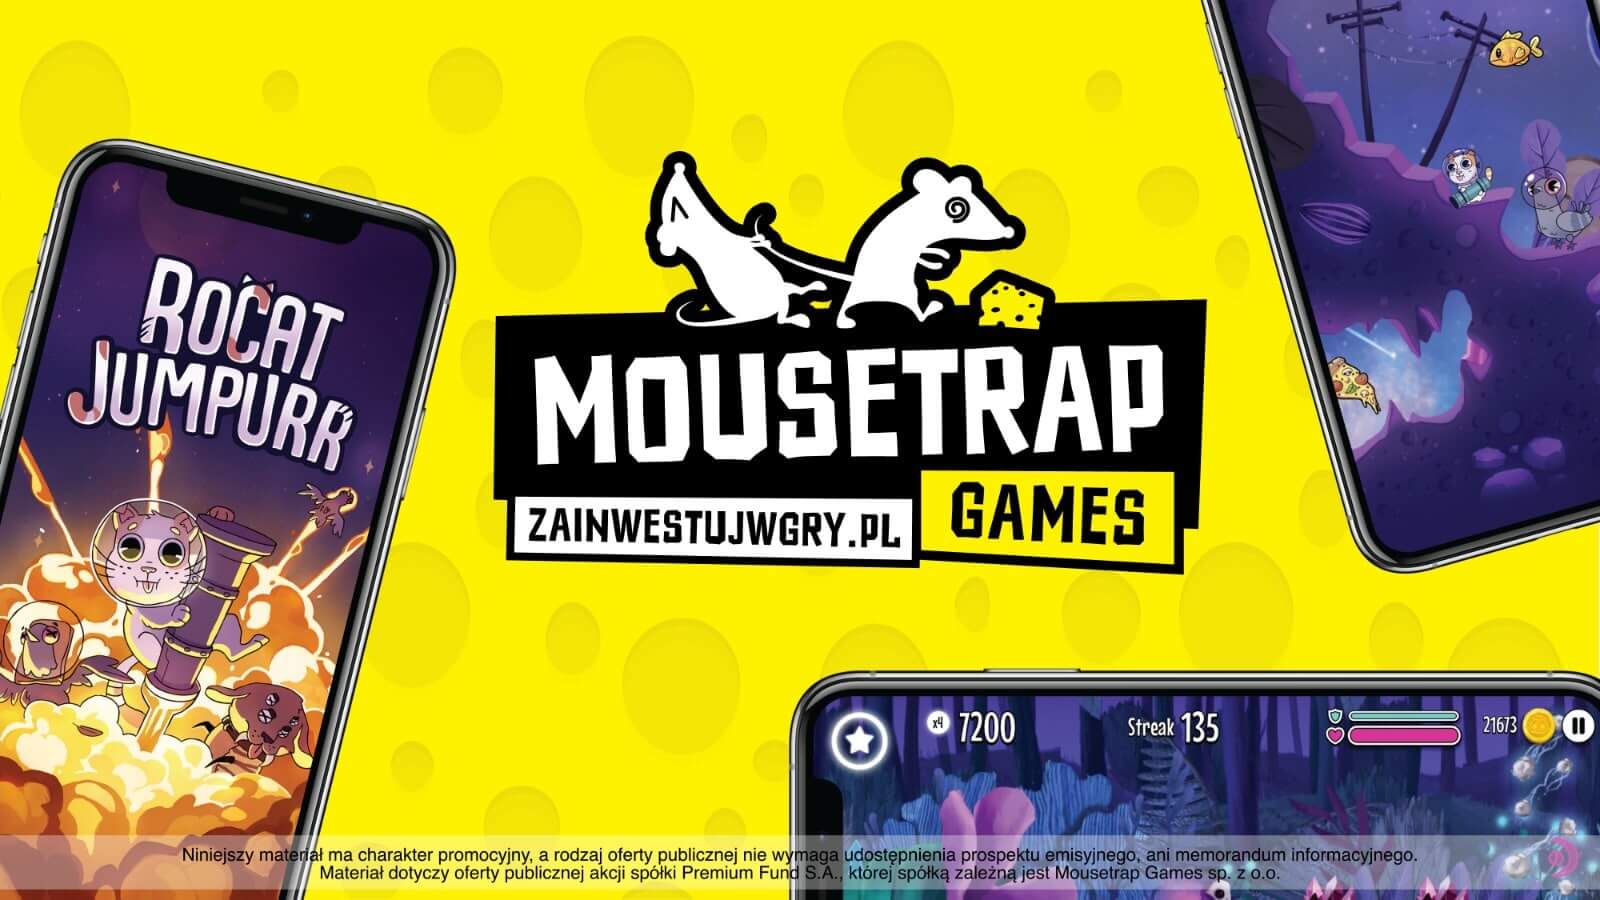 Mousetrap Games startuje z kampanią crowdfundingową